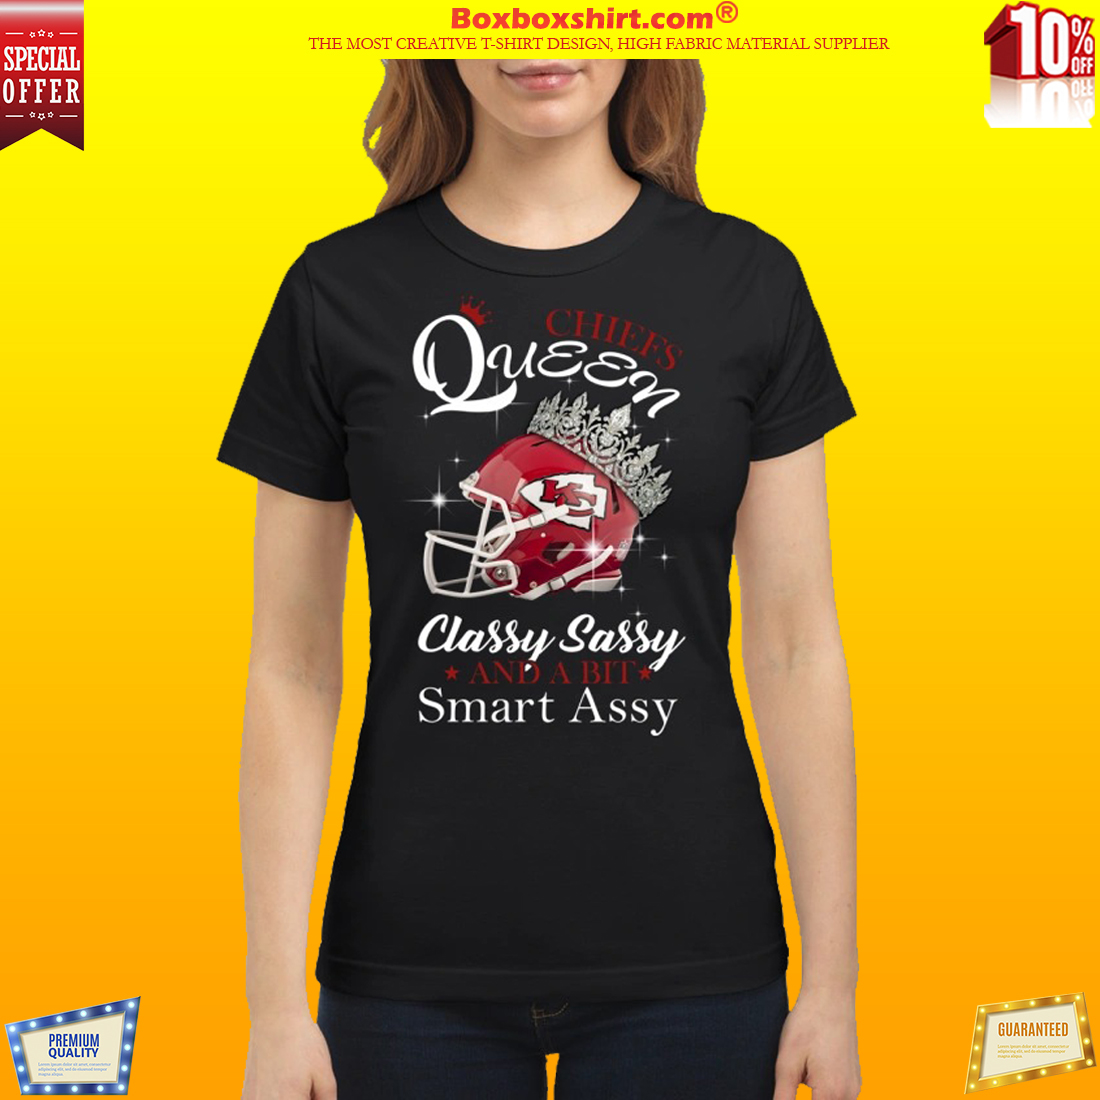 Kansas city Chieft queen classy sassy and a bit smart assy classic shirt